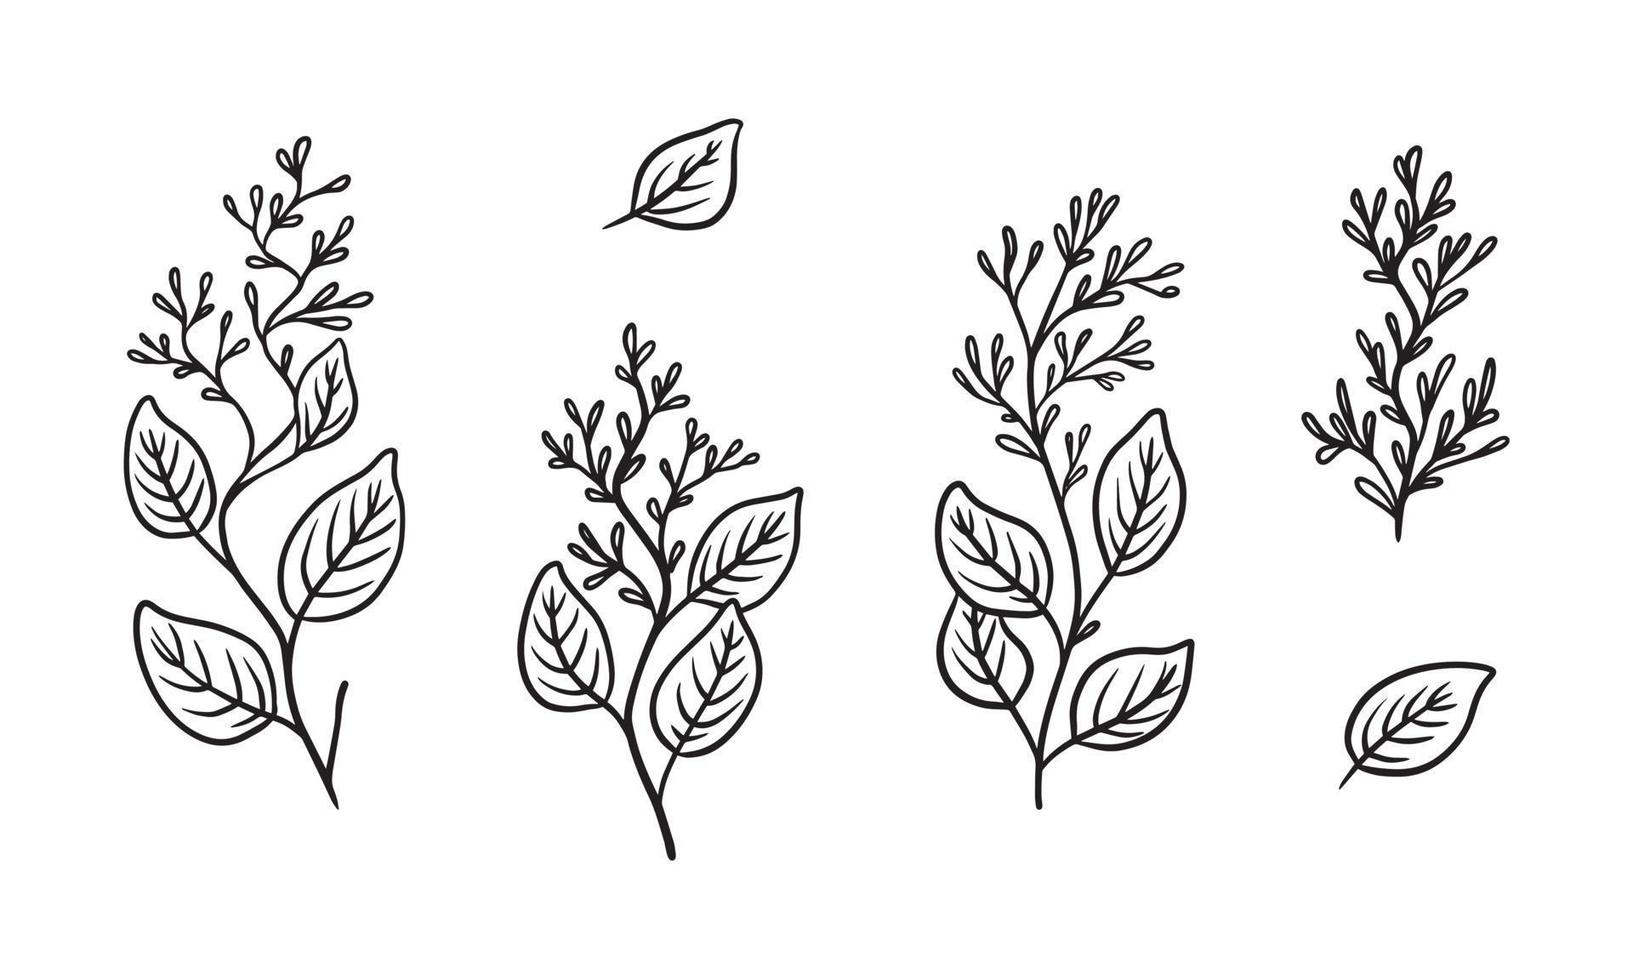 ilustración de planta de eucalipto orgánico para insignias y logotipo. etiquetas de sello para etiqueta con hojas de eucalipto aisladas. natural dibujado a mano en un diseño rústico simple. vector